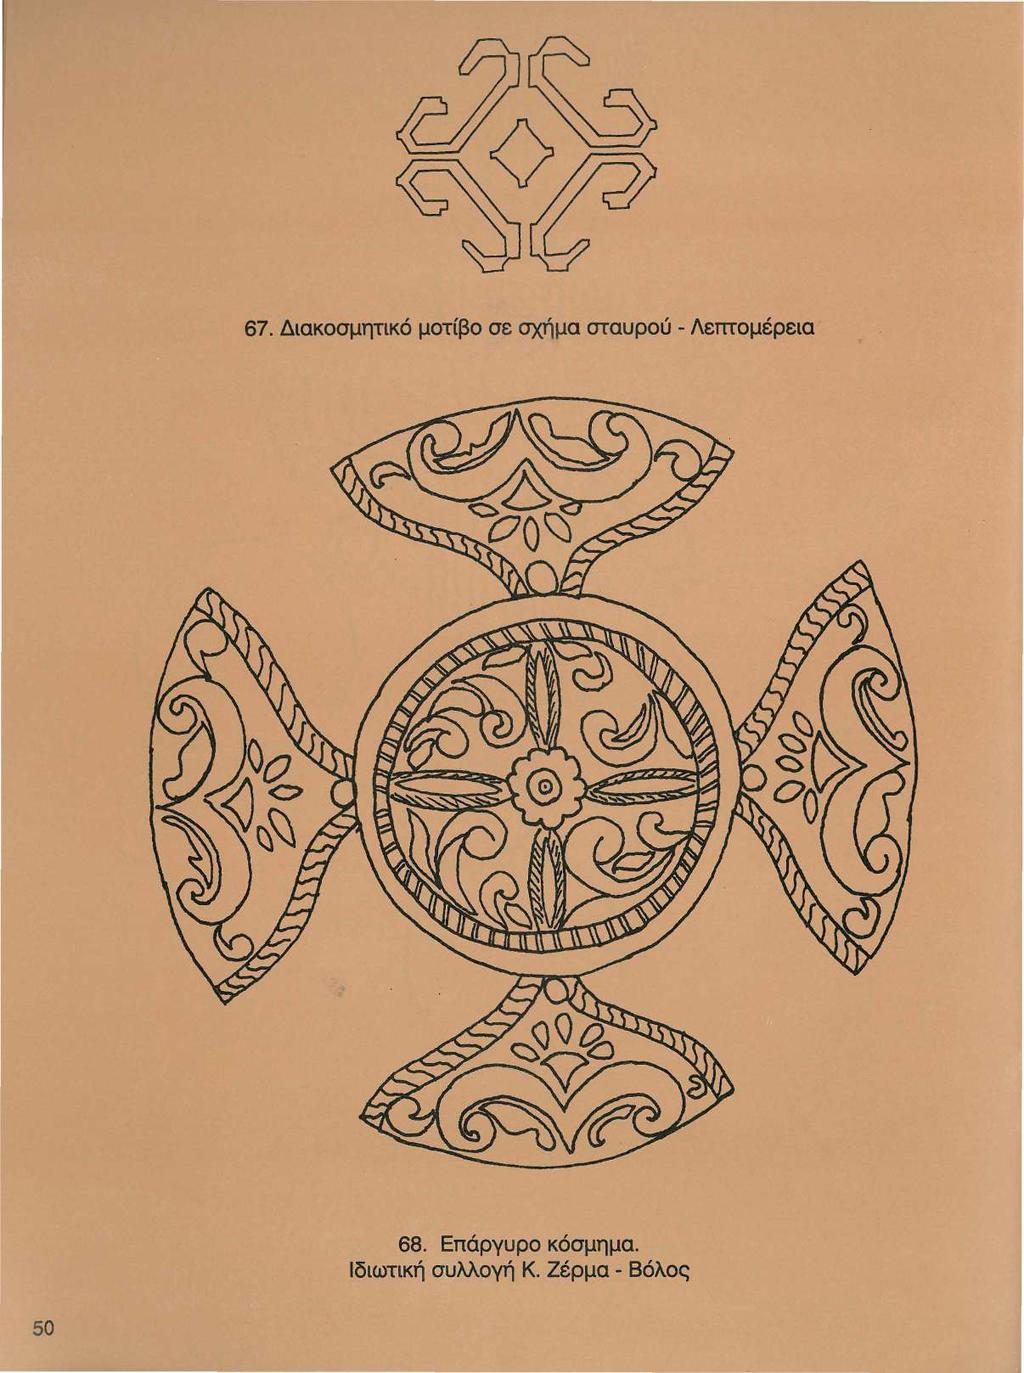 67. Διακοσμητικό μοτίβο σε σχήμα σταυρού - Λεπτομέρεια